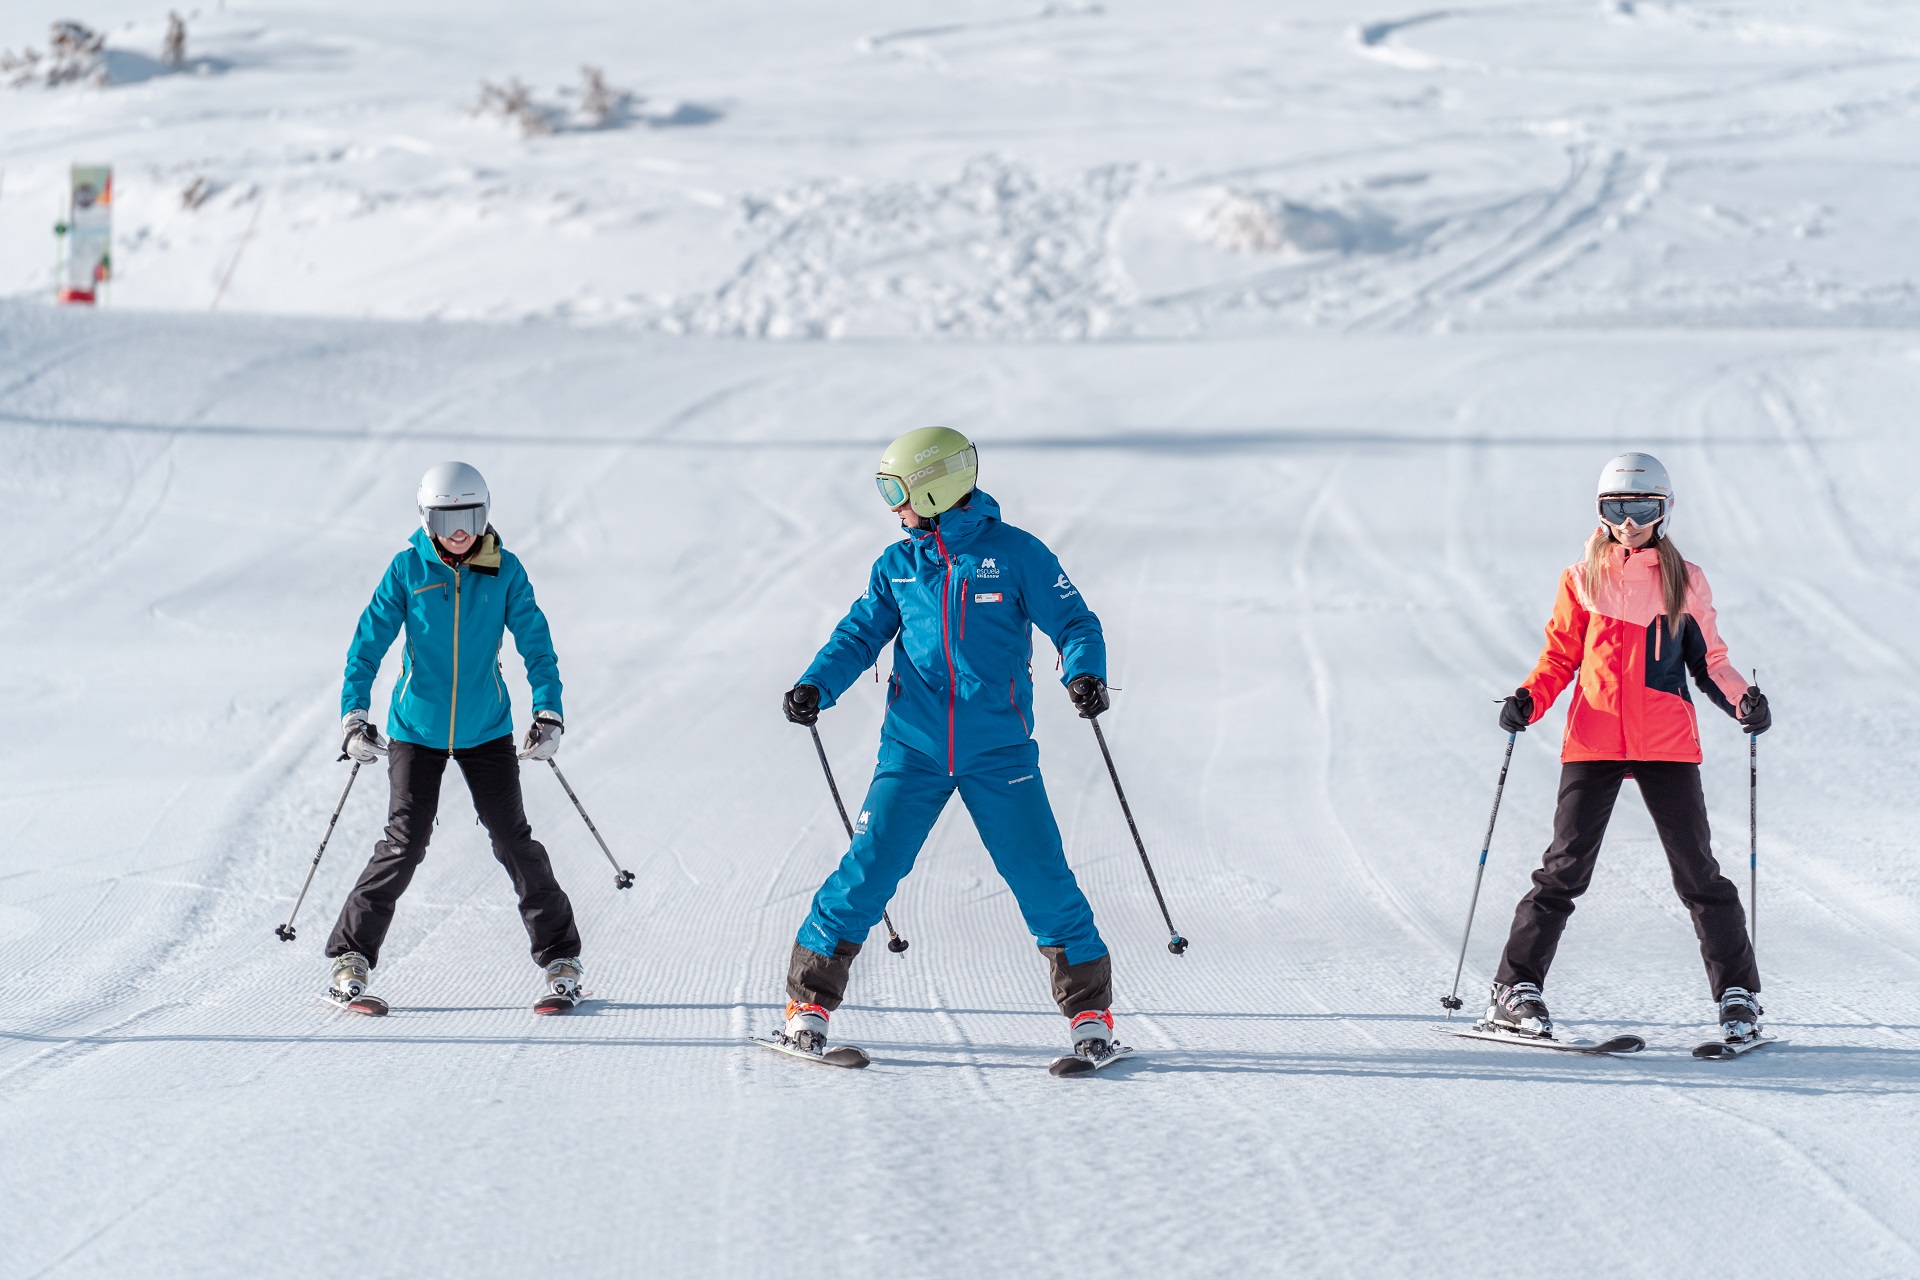 Clases esqui gratis | Aramón | Estación de esquí Javalambre Valdelinares